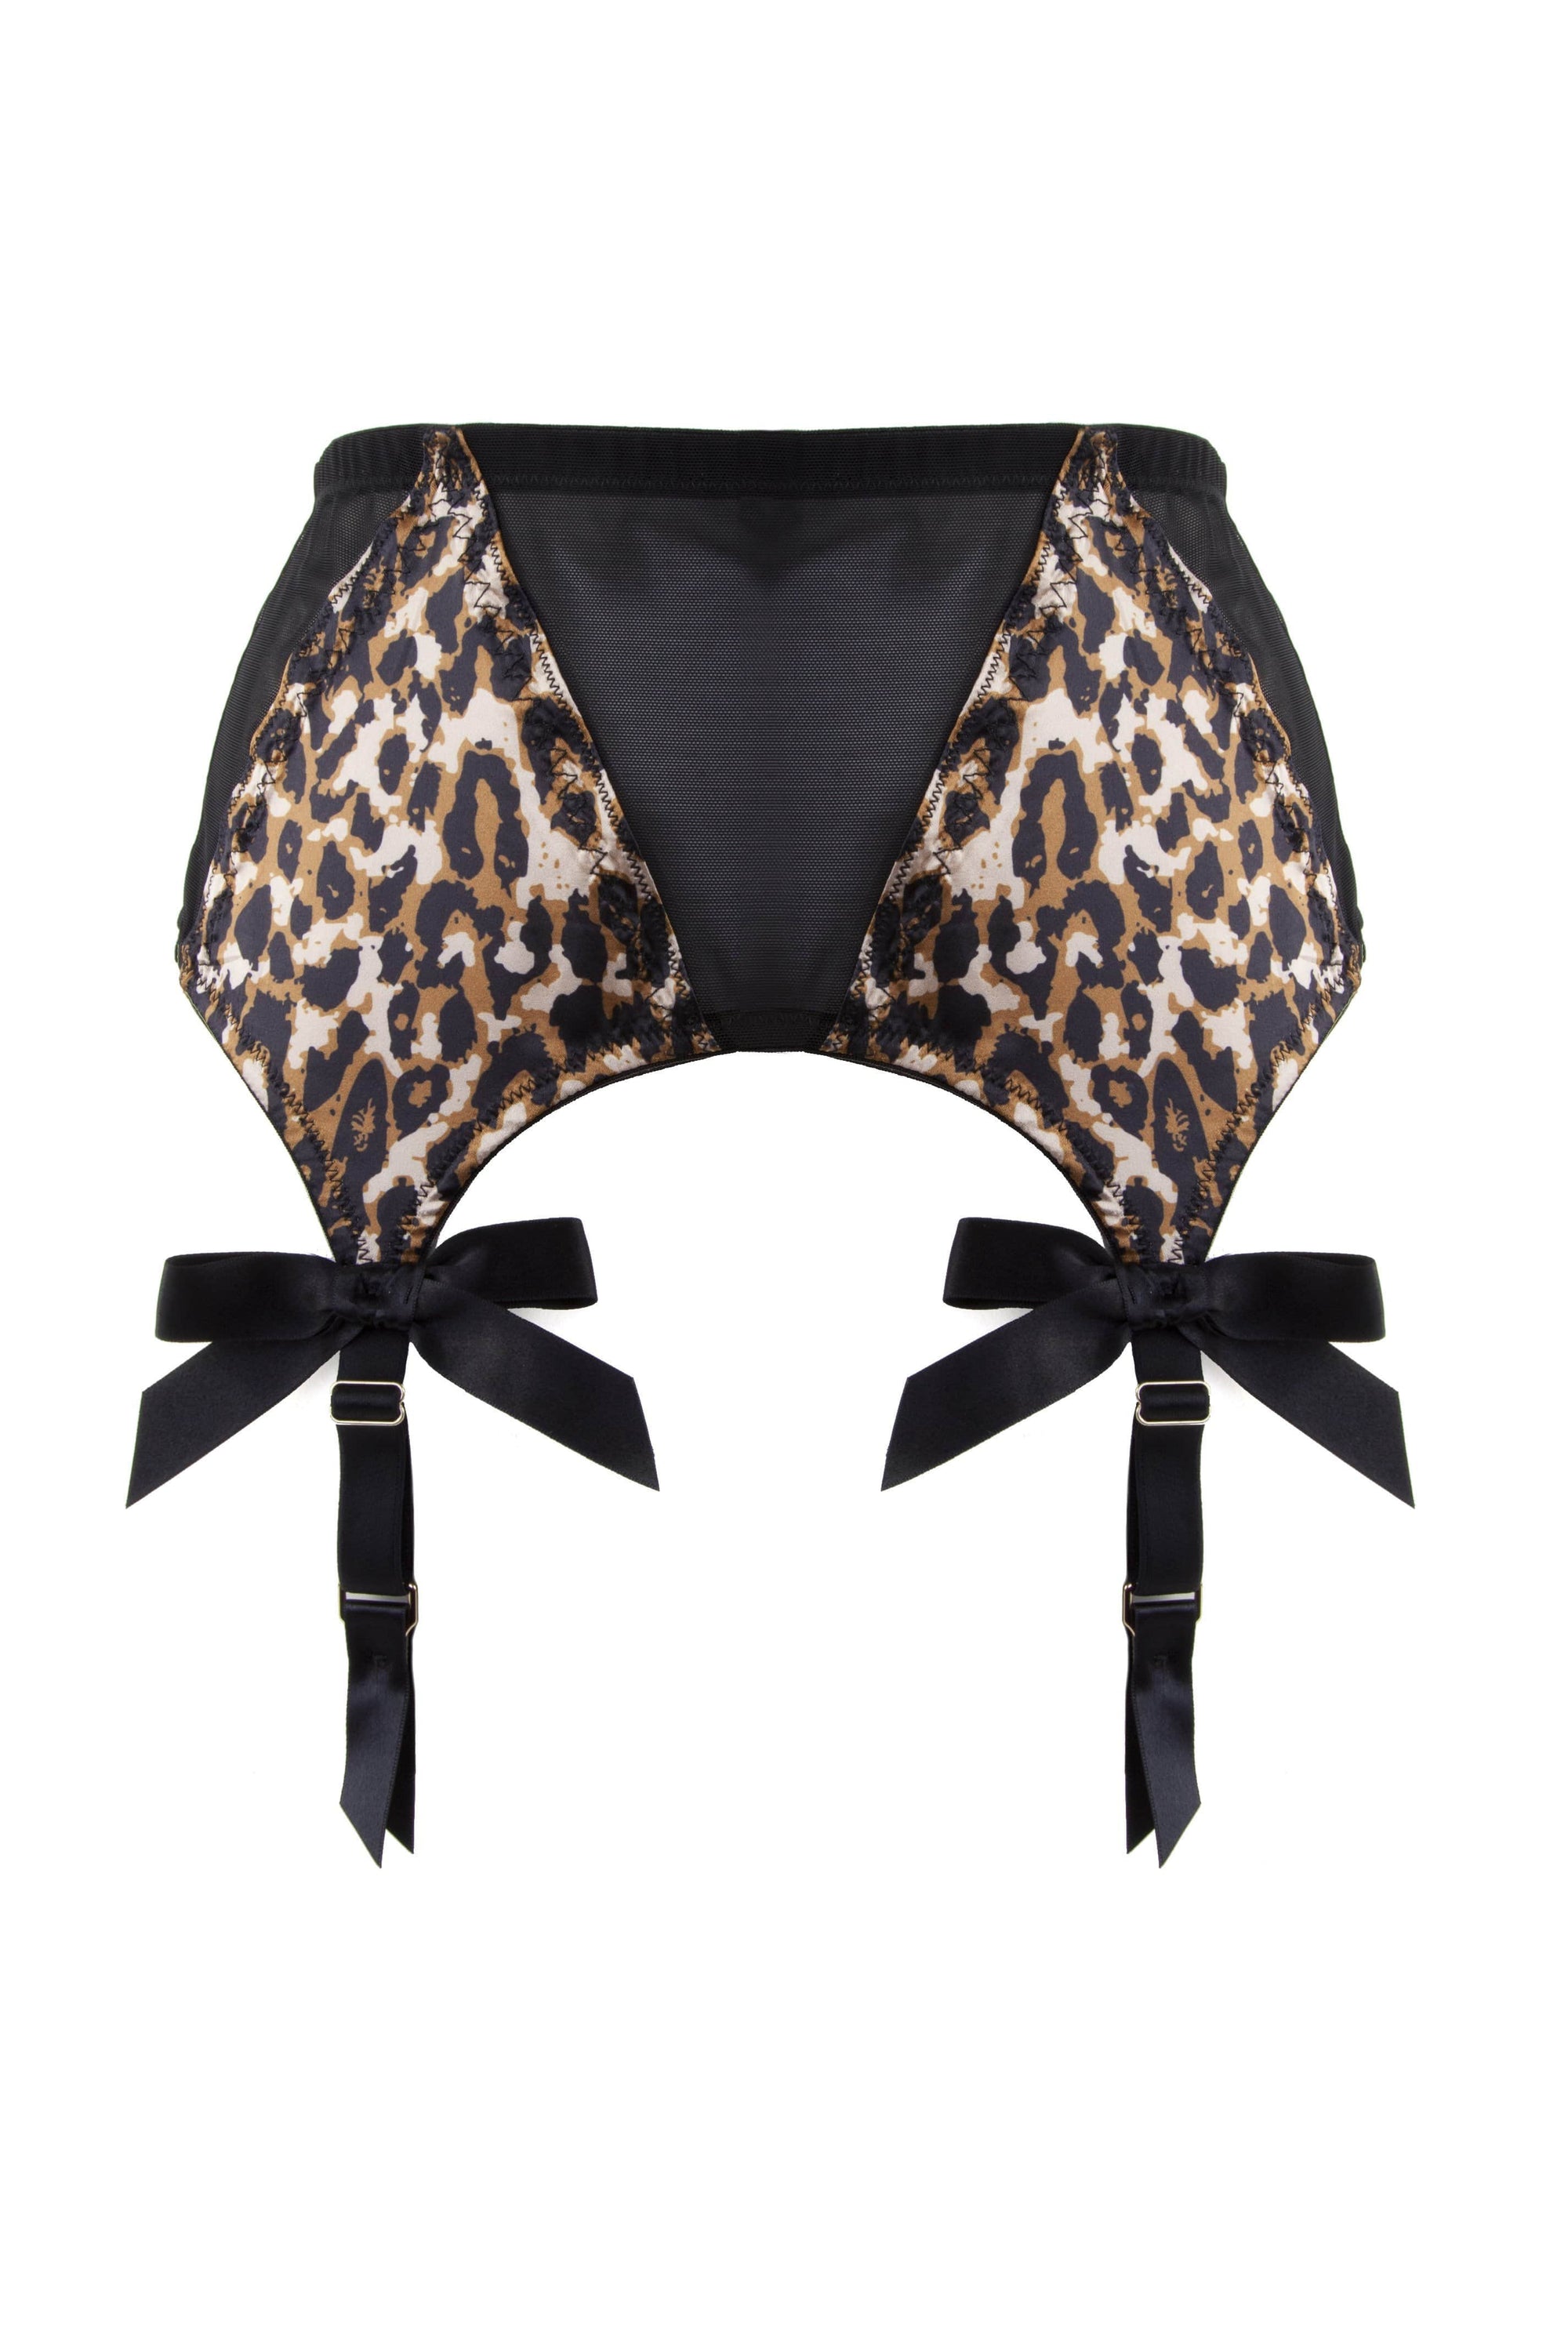 Bettie Page Leopard/Black Z Stitch Strap Suspender Belt